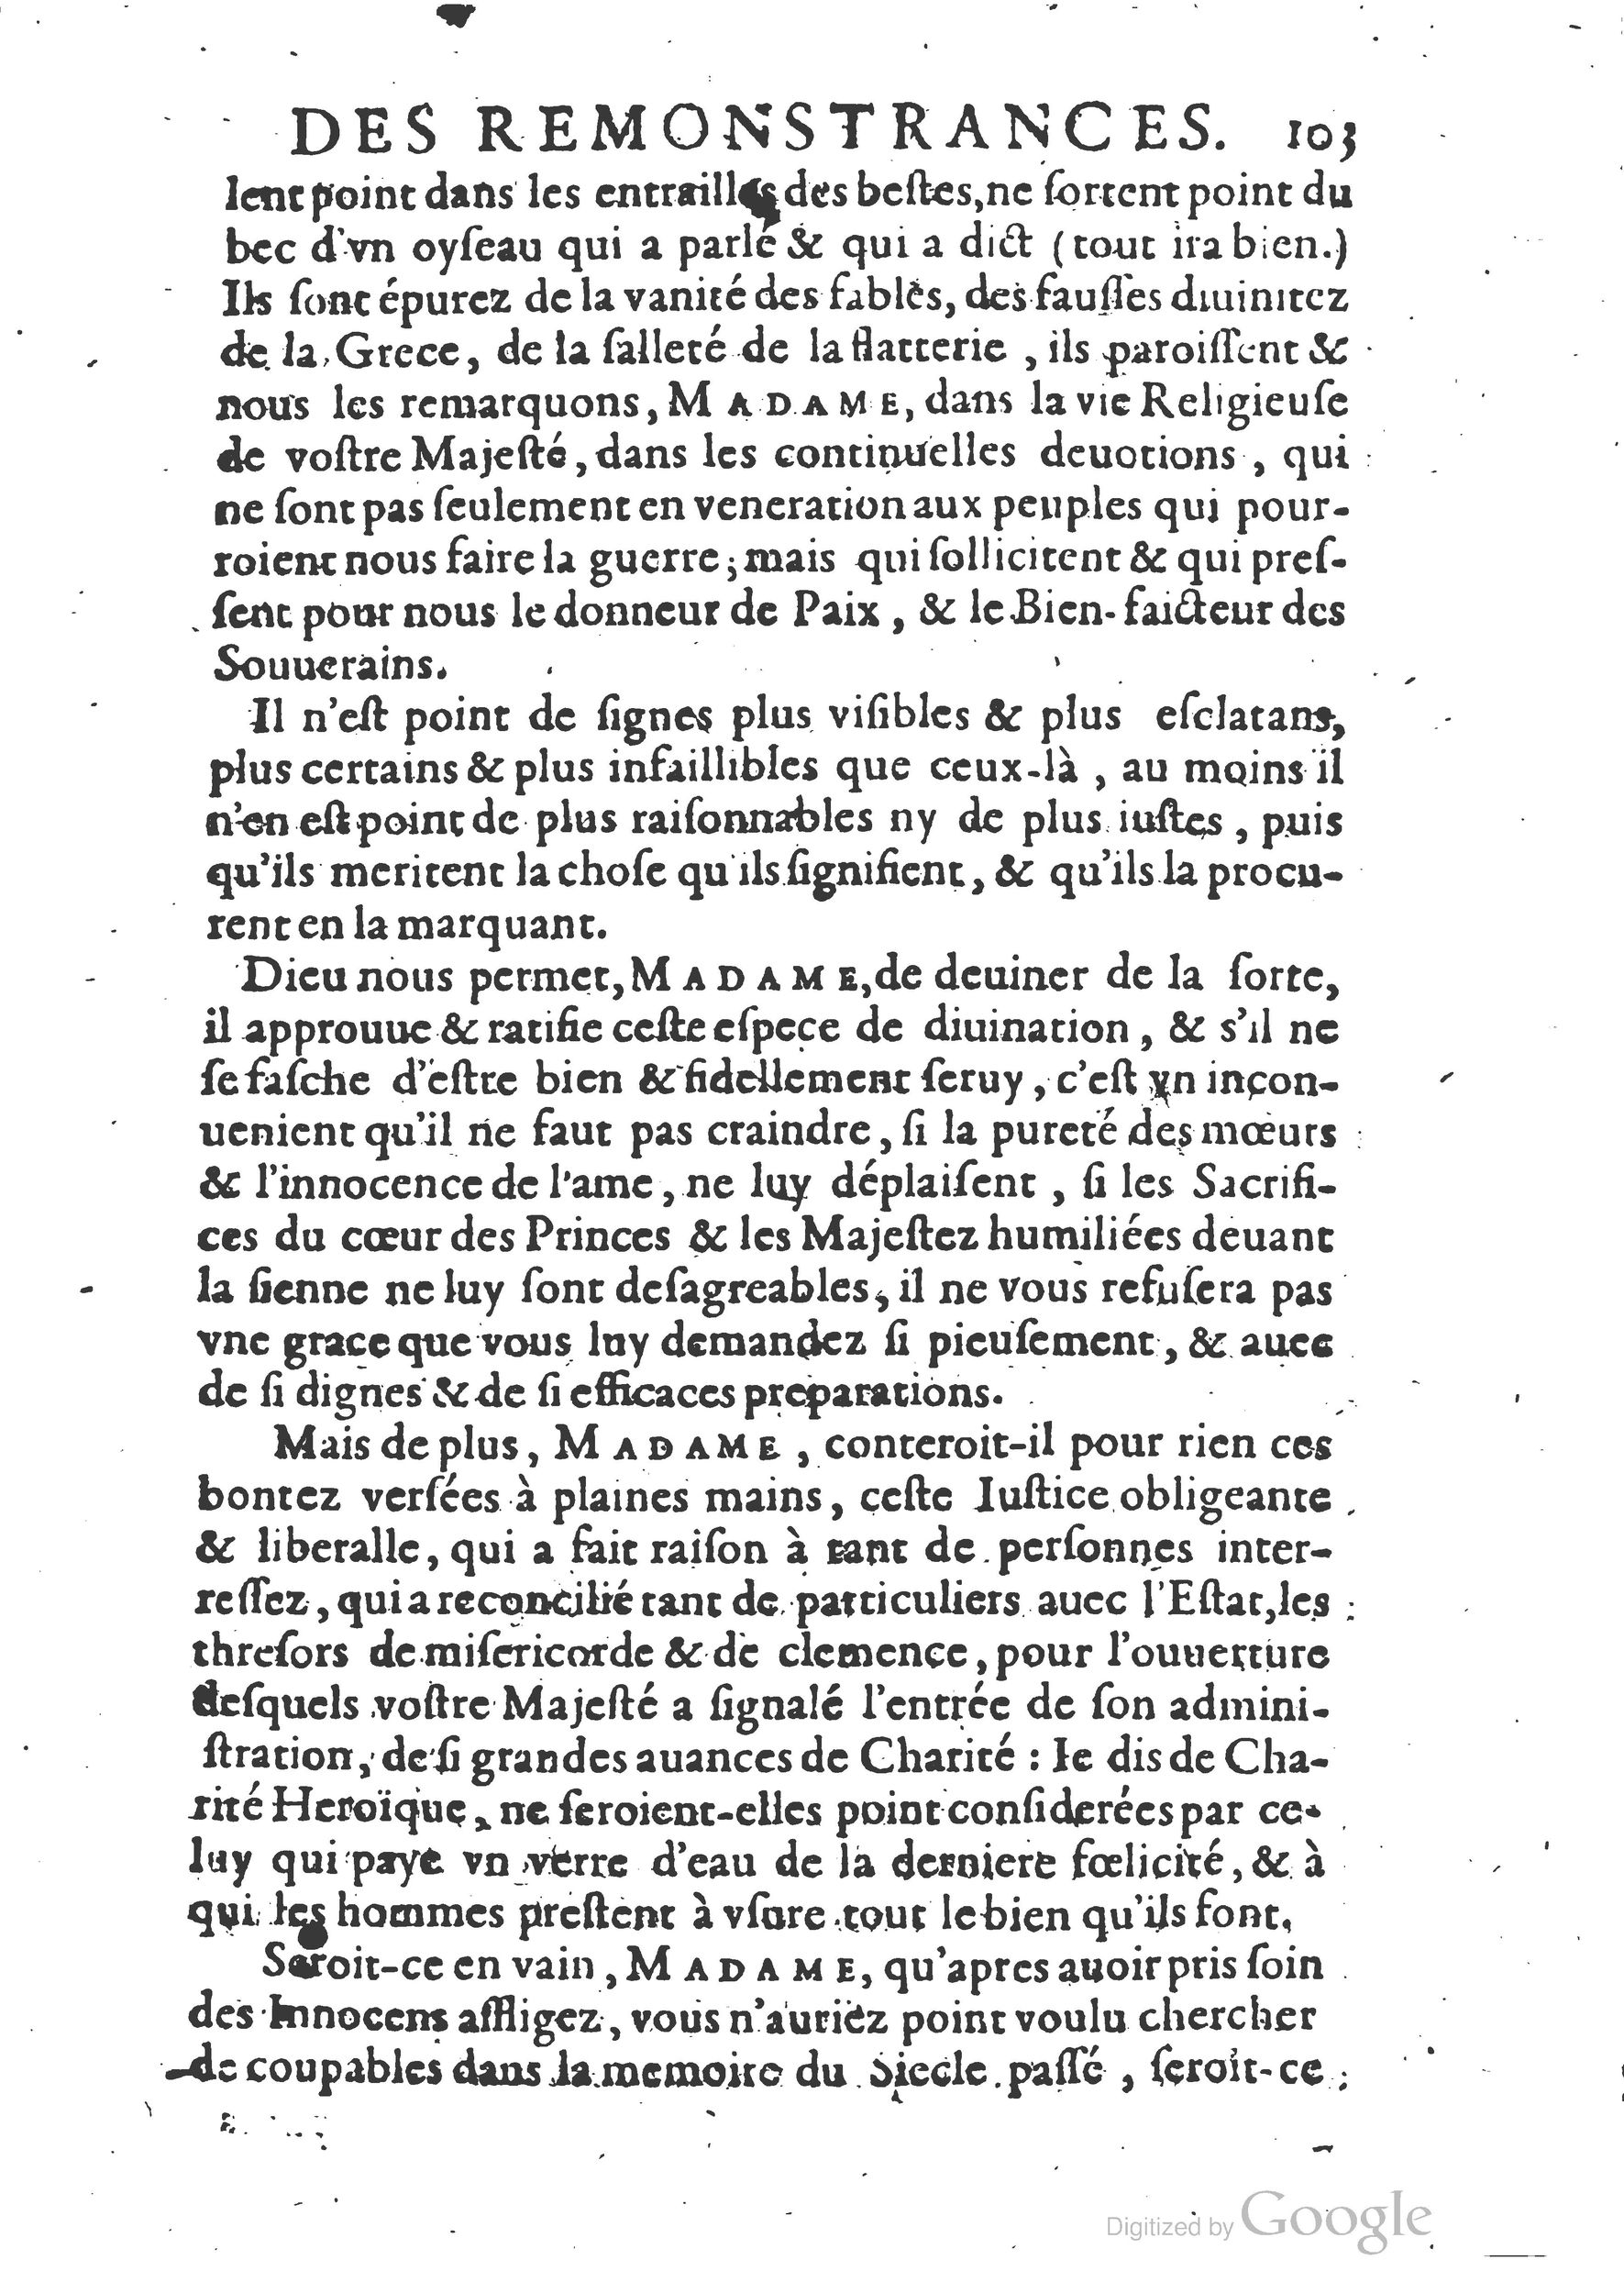 1654 Trésor des harangues, remontrances et oraisons funèbres Robin_BM Lyon_Page_354.jpg